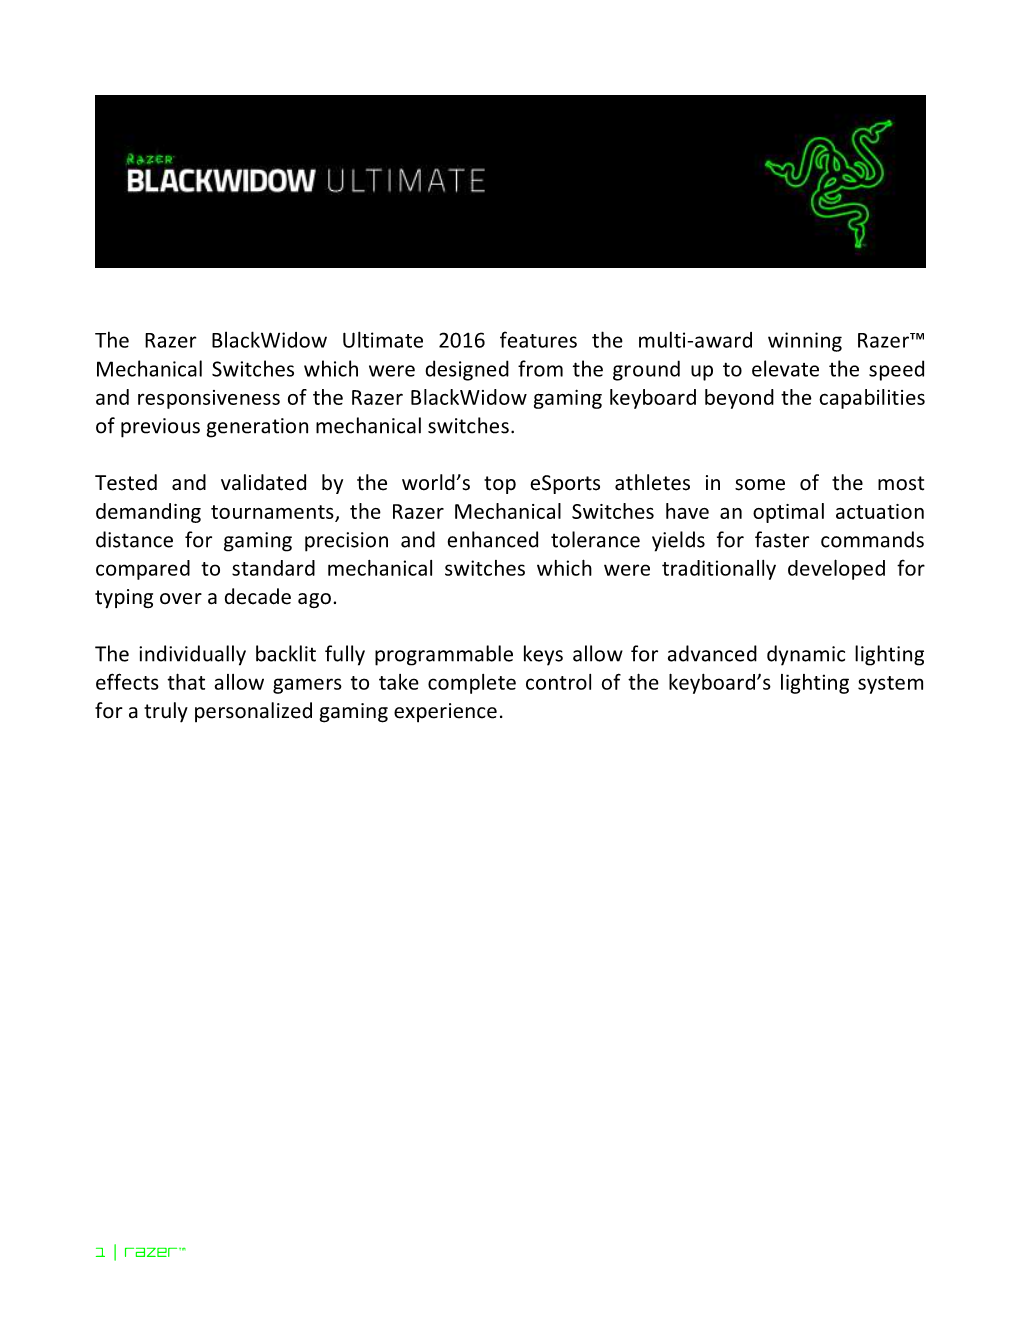 5. Installing Your Razer Blackwidow Ultimate 2016